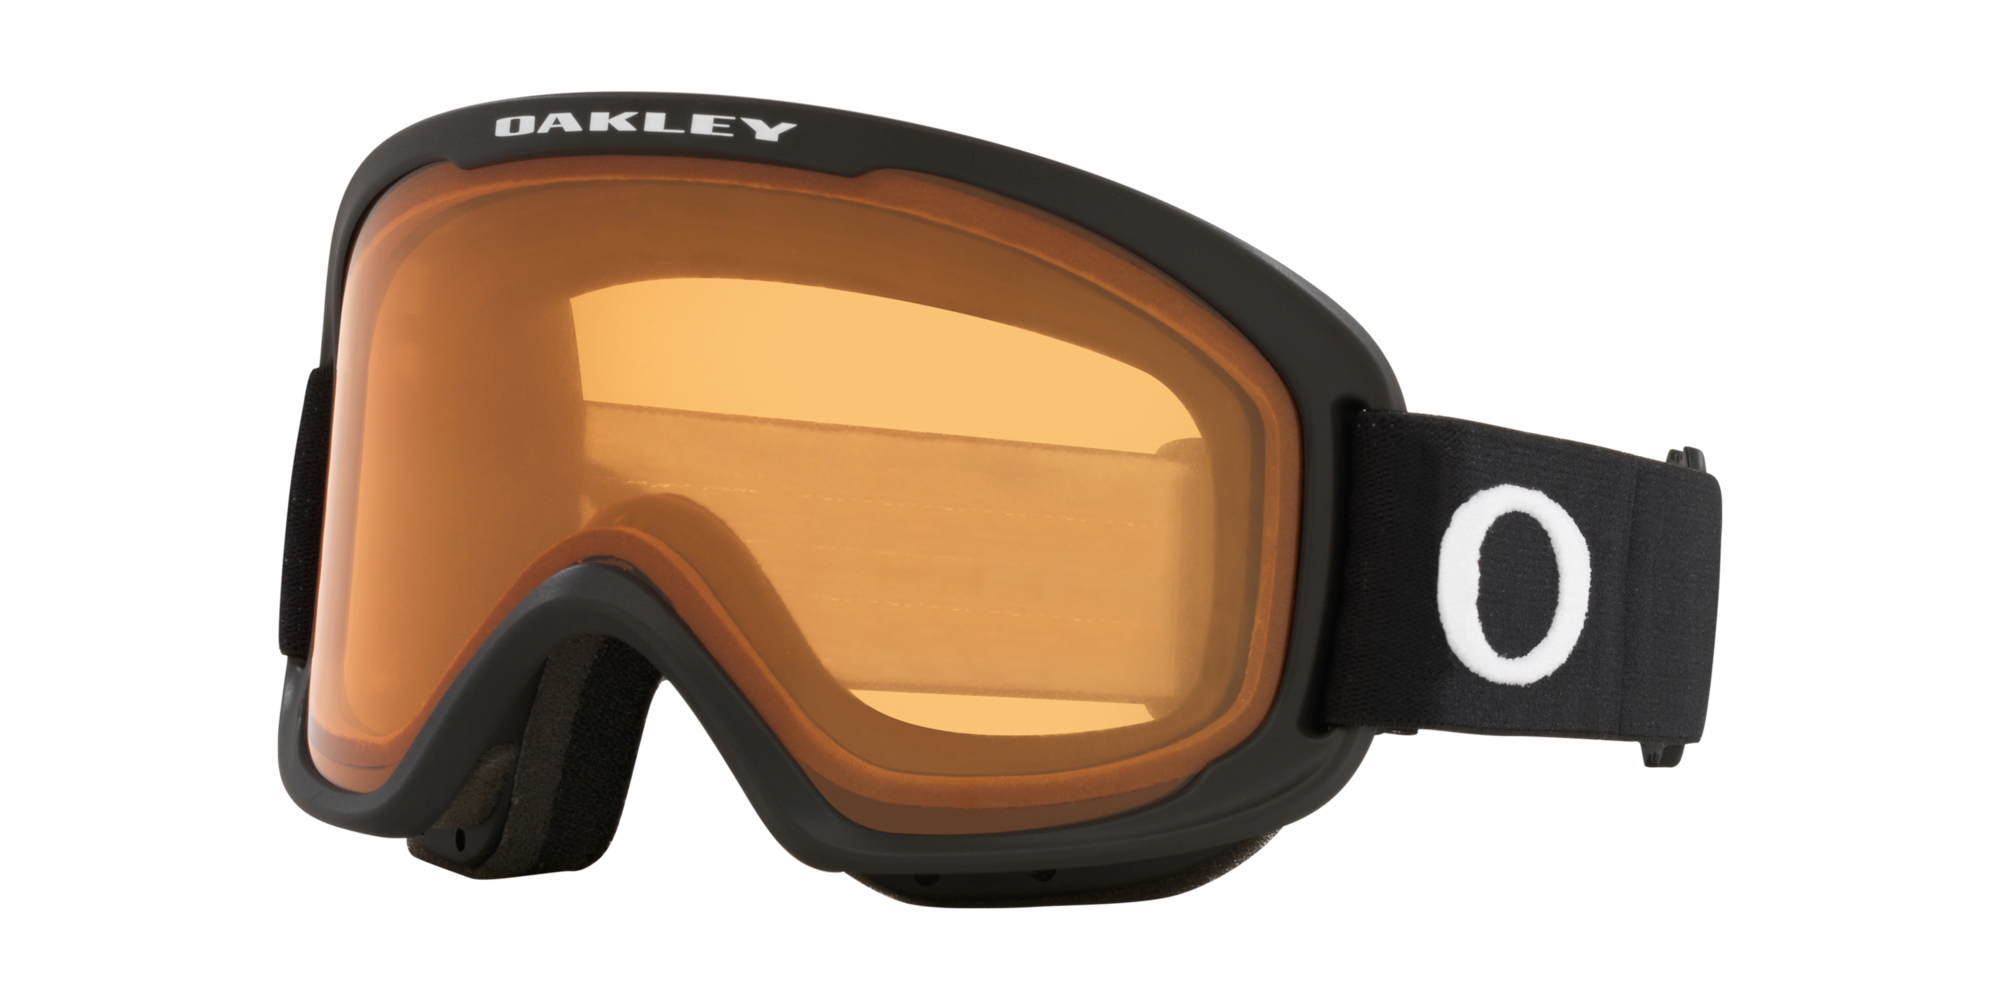 OAKLEY O-Frame 2.0 Pro M Goggles - Matte Black w/ Persimmon